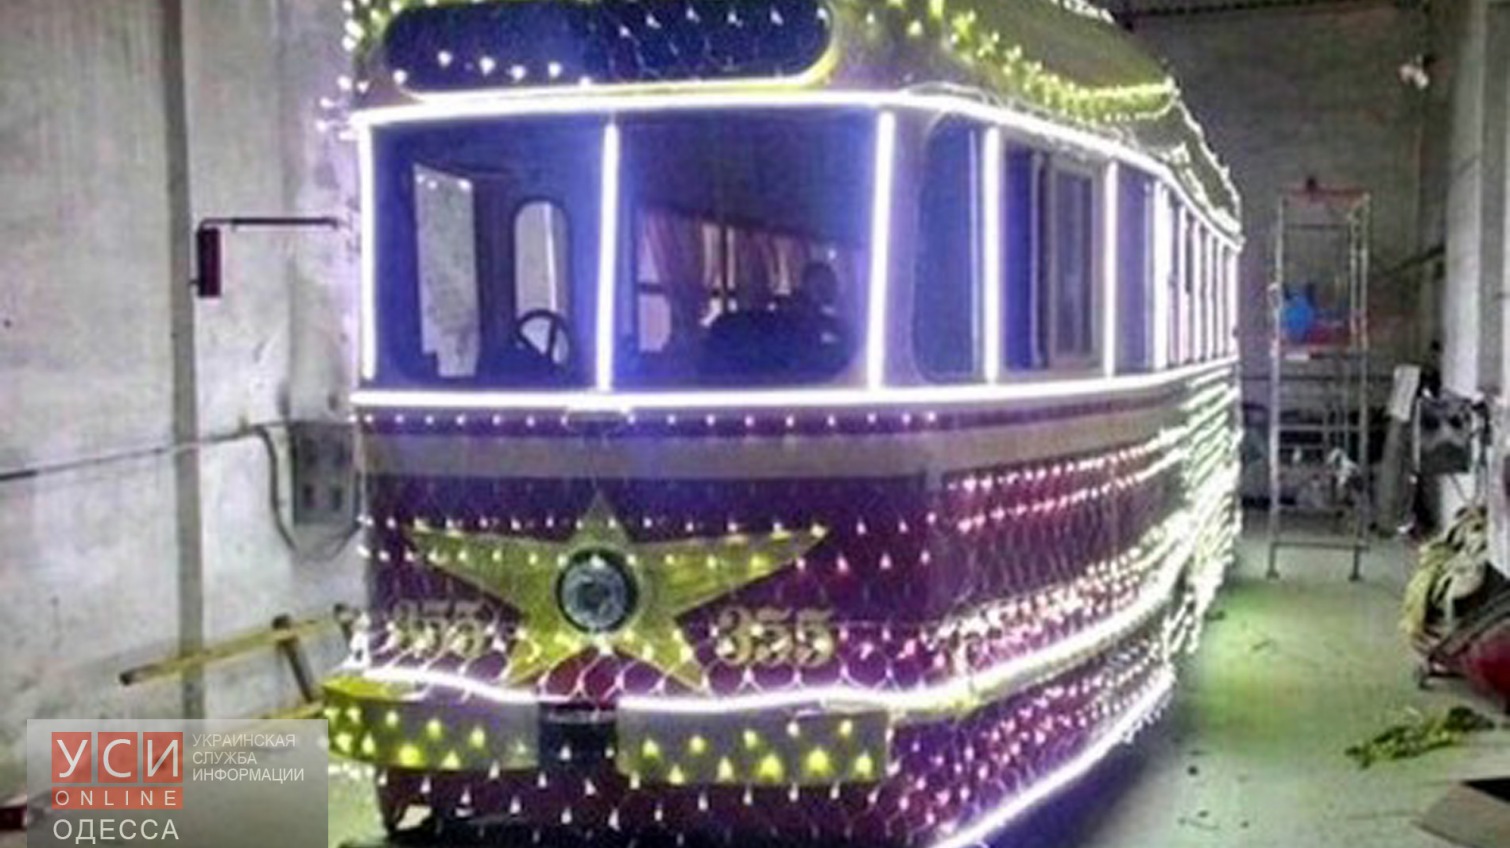 Дед Мороз и Снегурочка прокатят в Новогоднем трамвае бесплатно «фото»